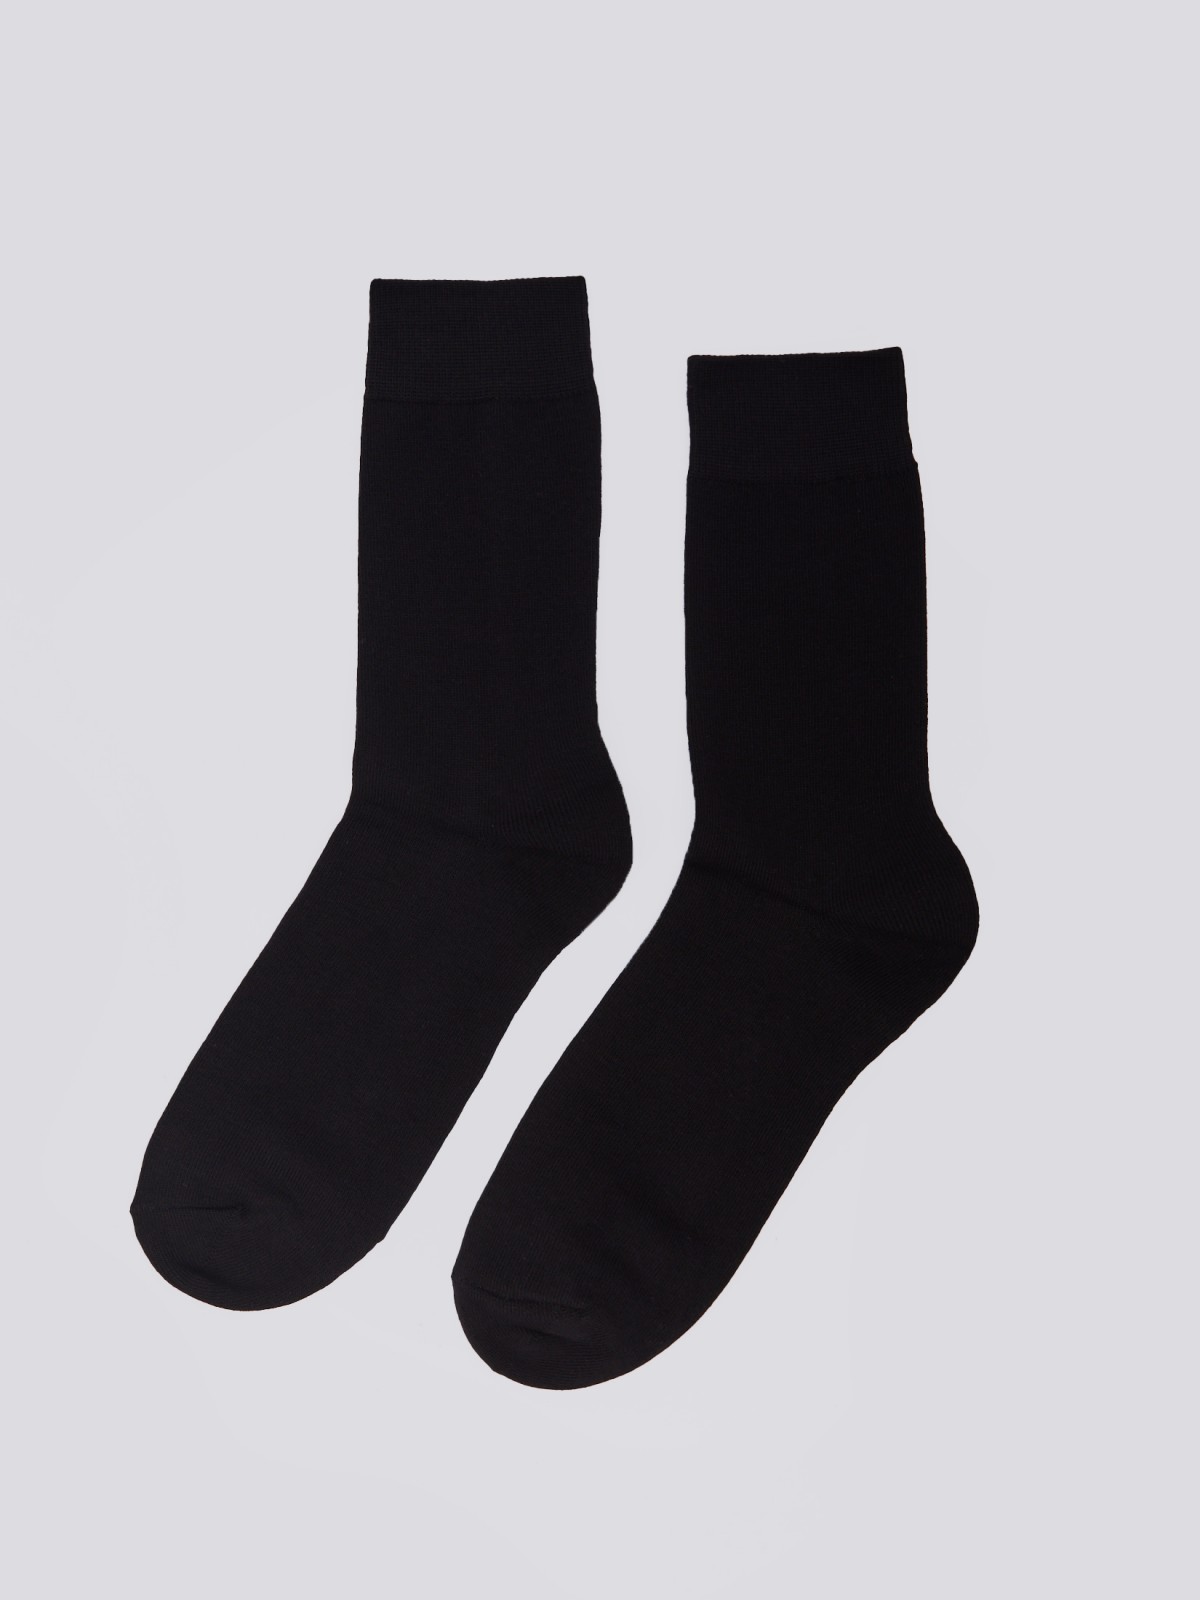 Набор носков (3 пары в комплекте) zolla 01411998J015, цвет черный, размер 25-27 - фото 3